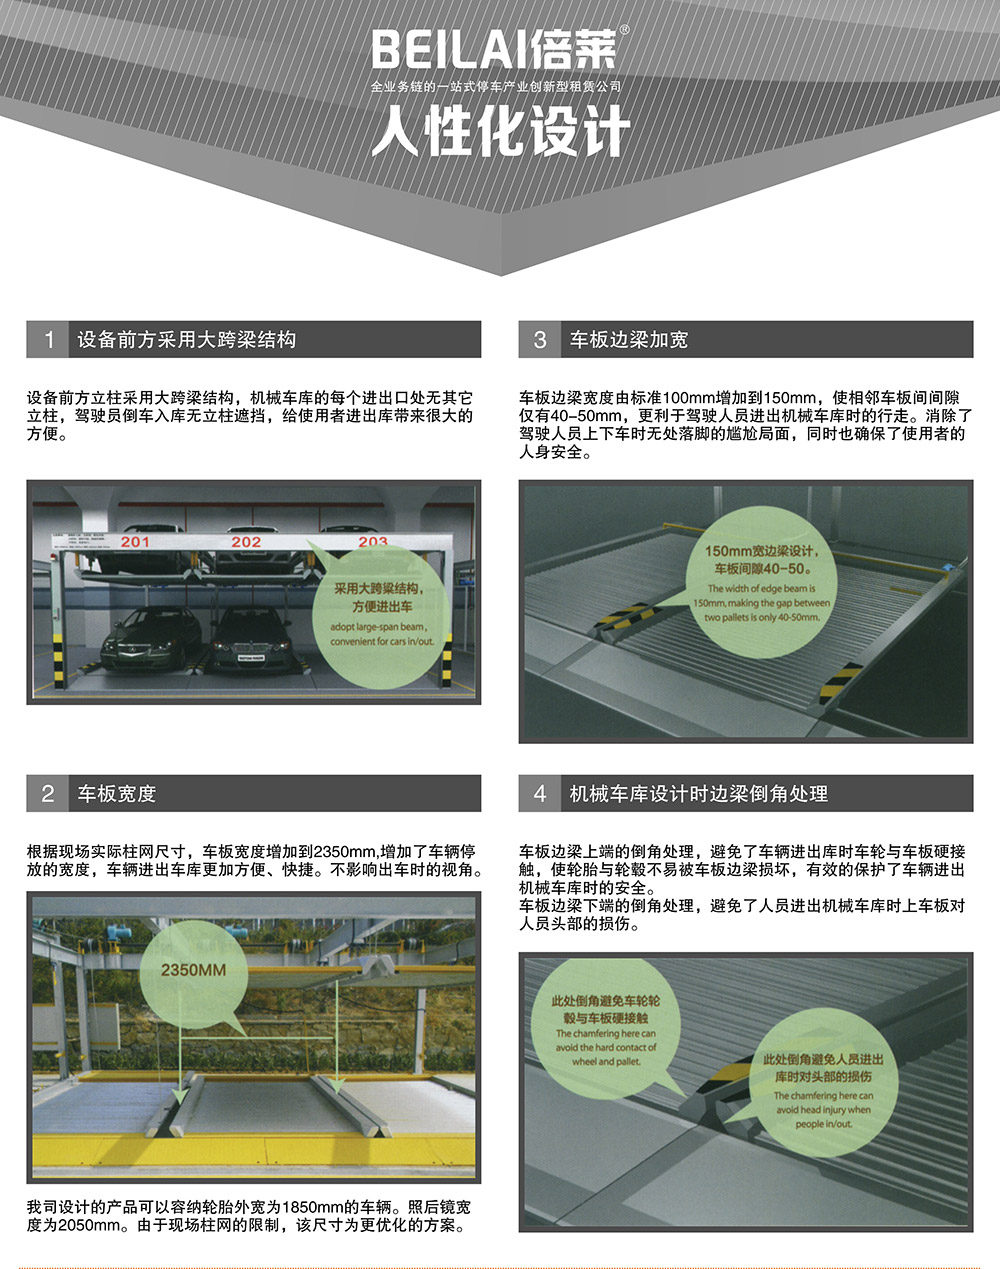 成都重庆PSH升降横移停车设备人性化设计.jpg